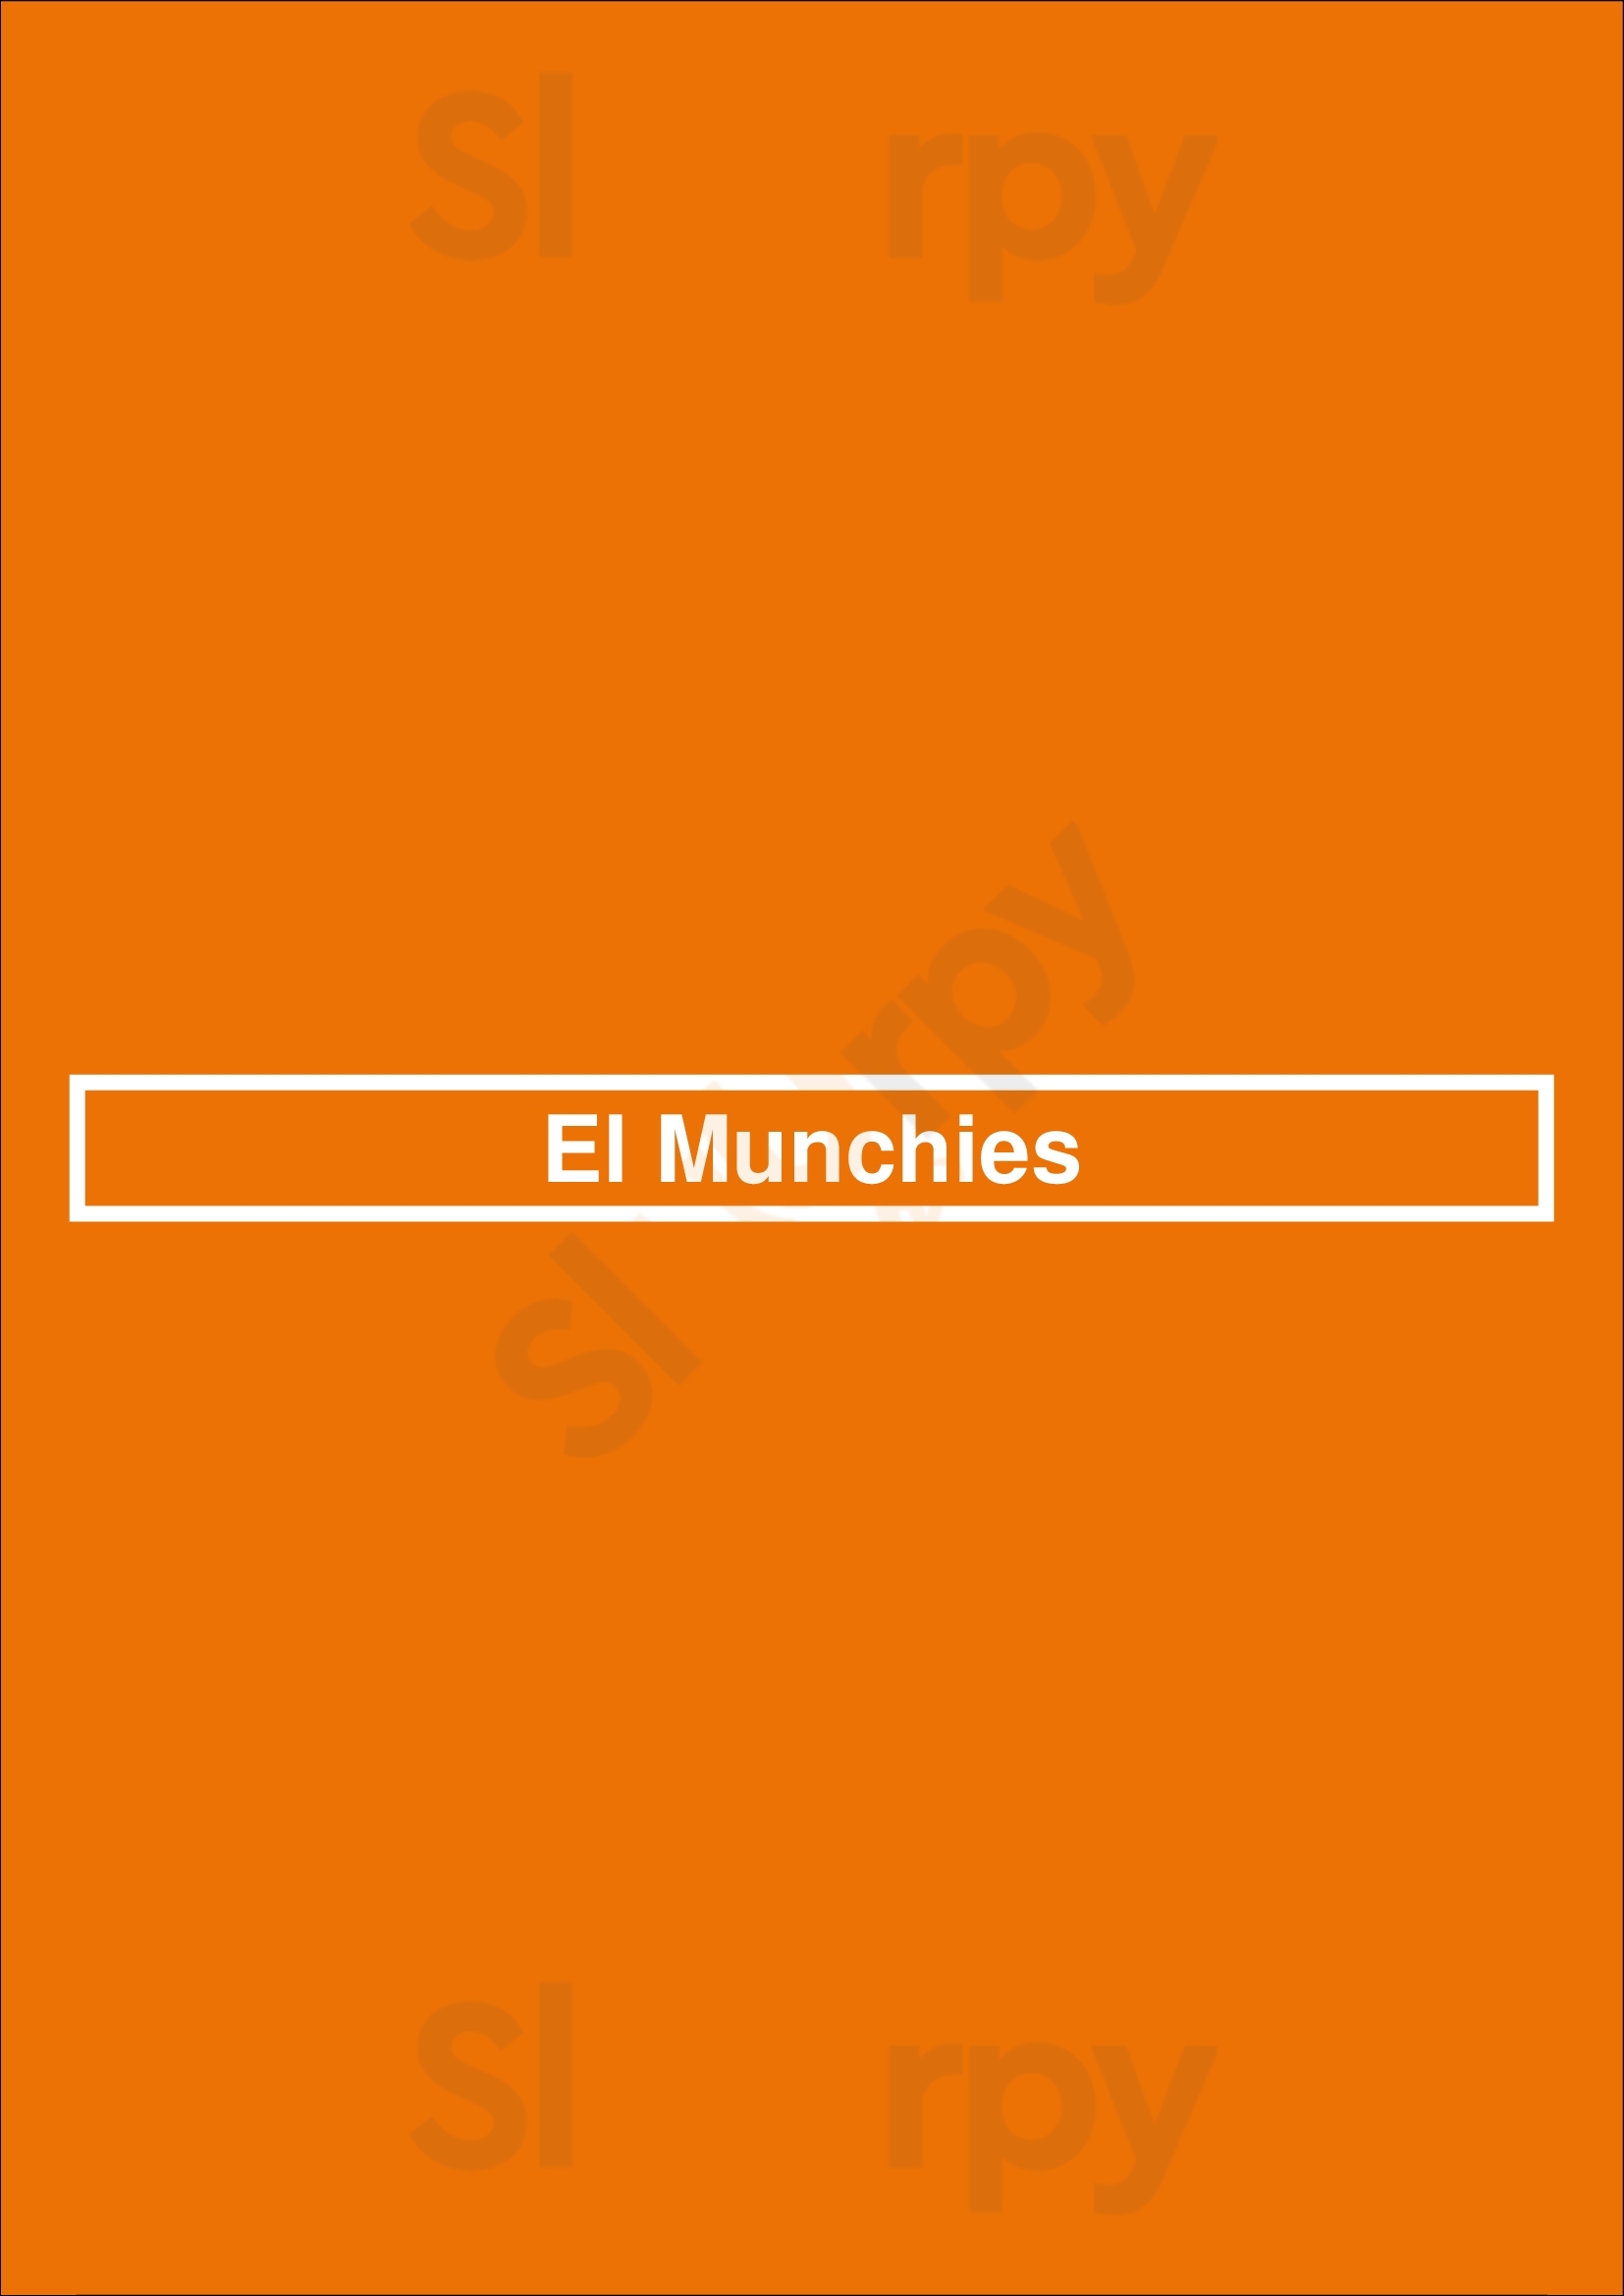 El Munchies Glendale Menu - 1